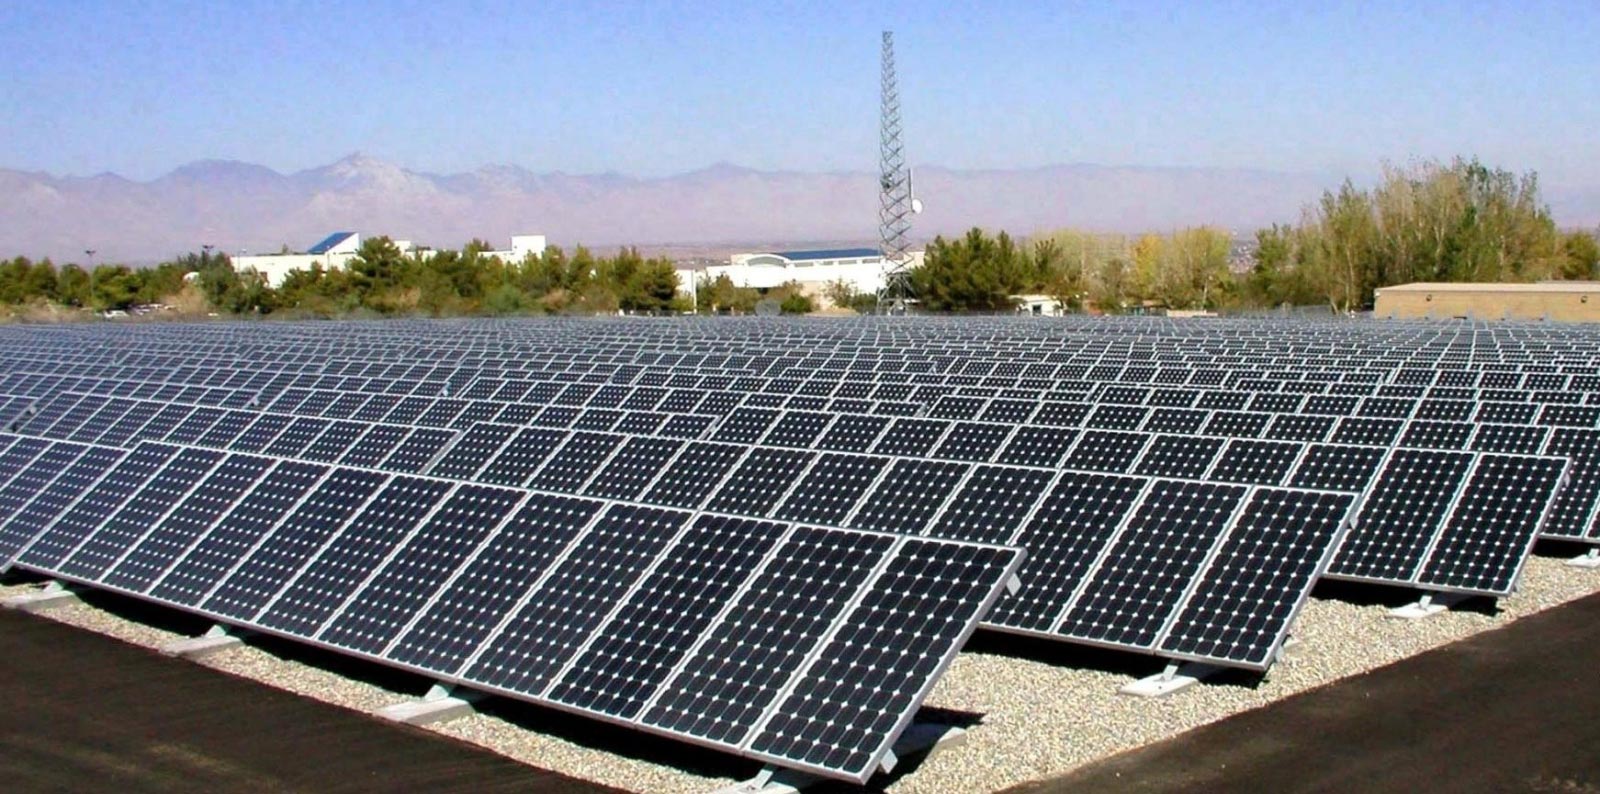 اسعار الطاقة الشمسية في دمشق 2019